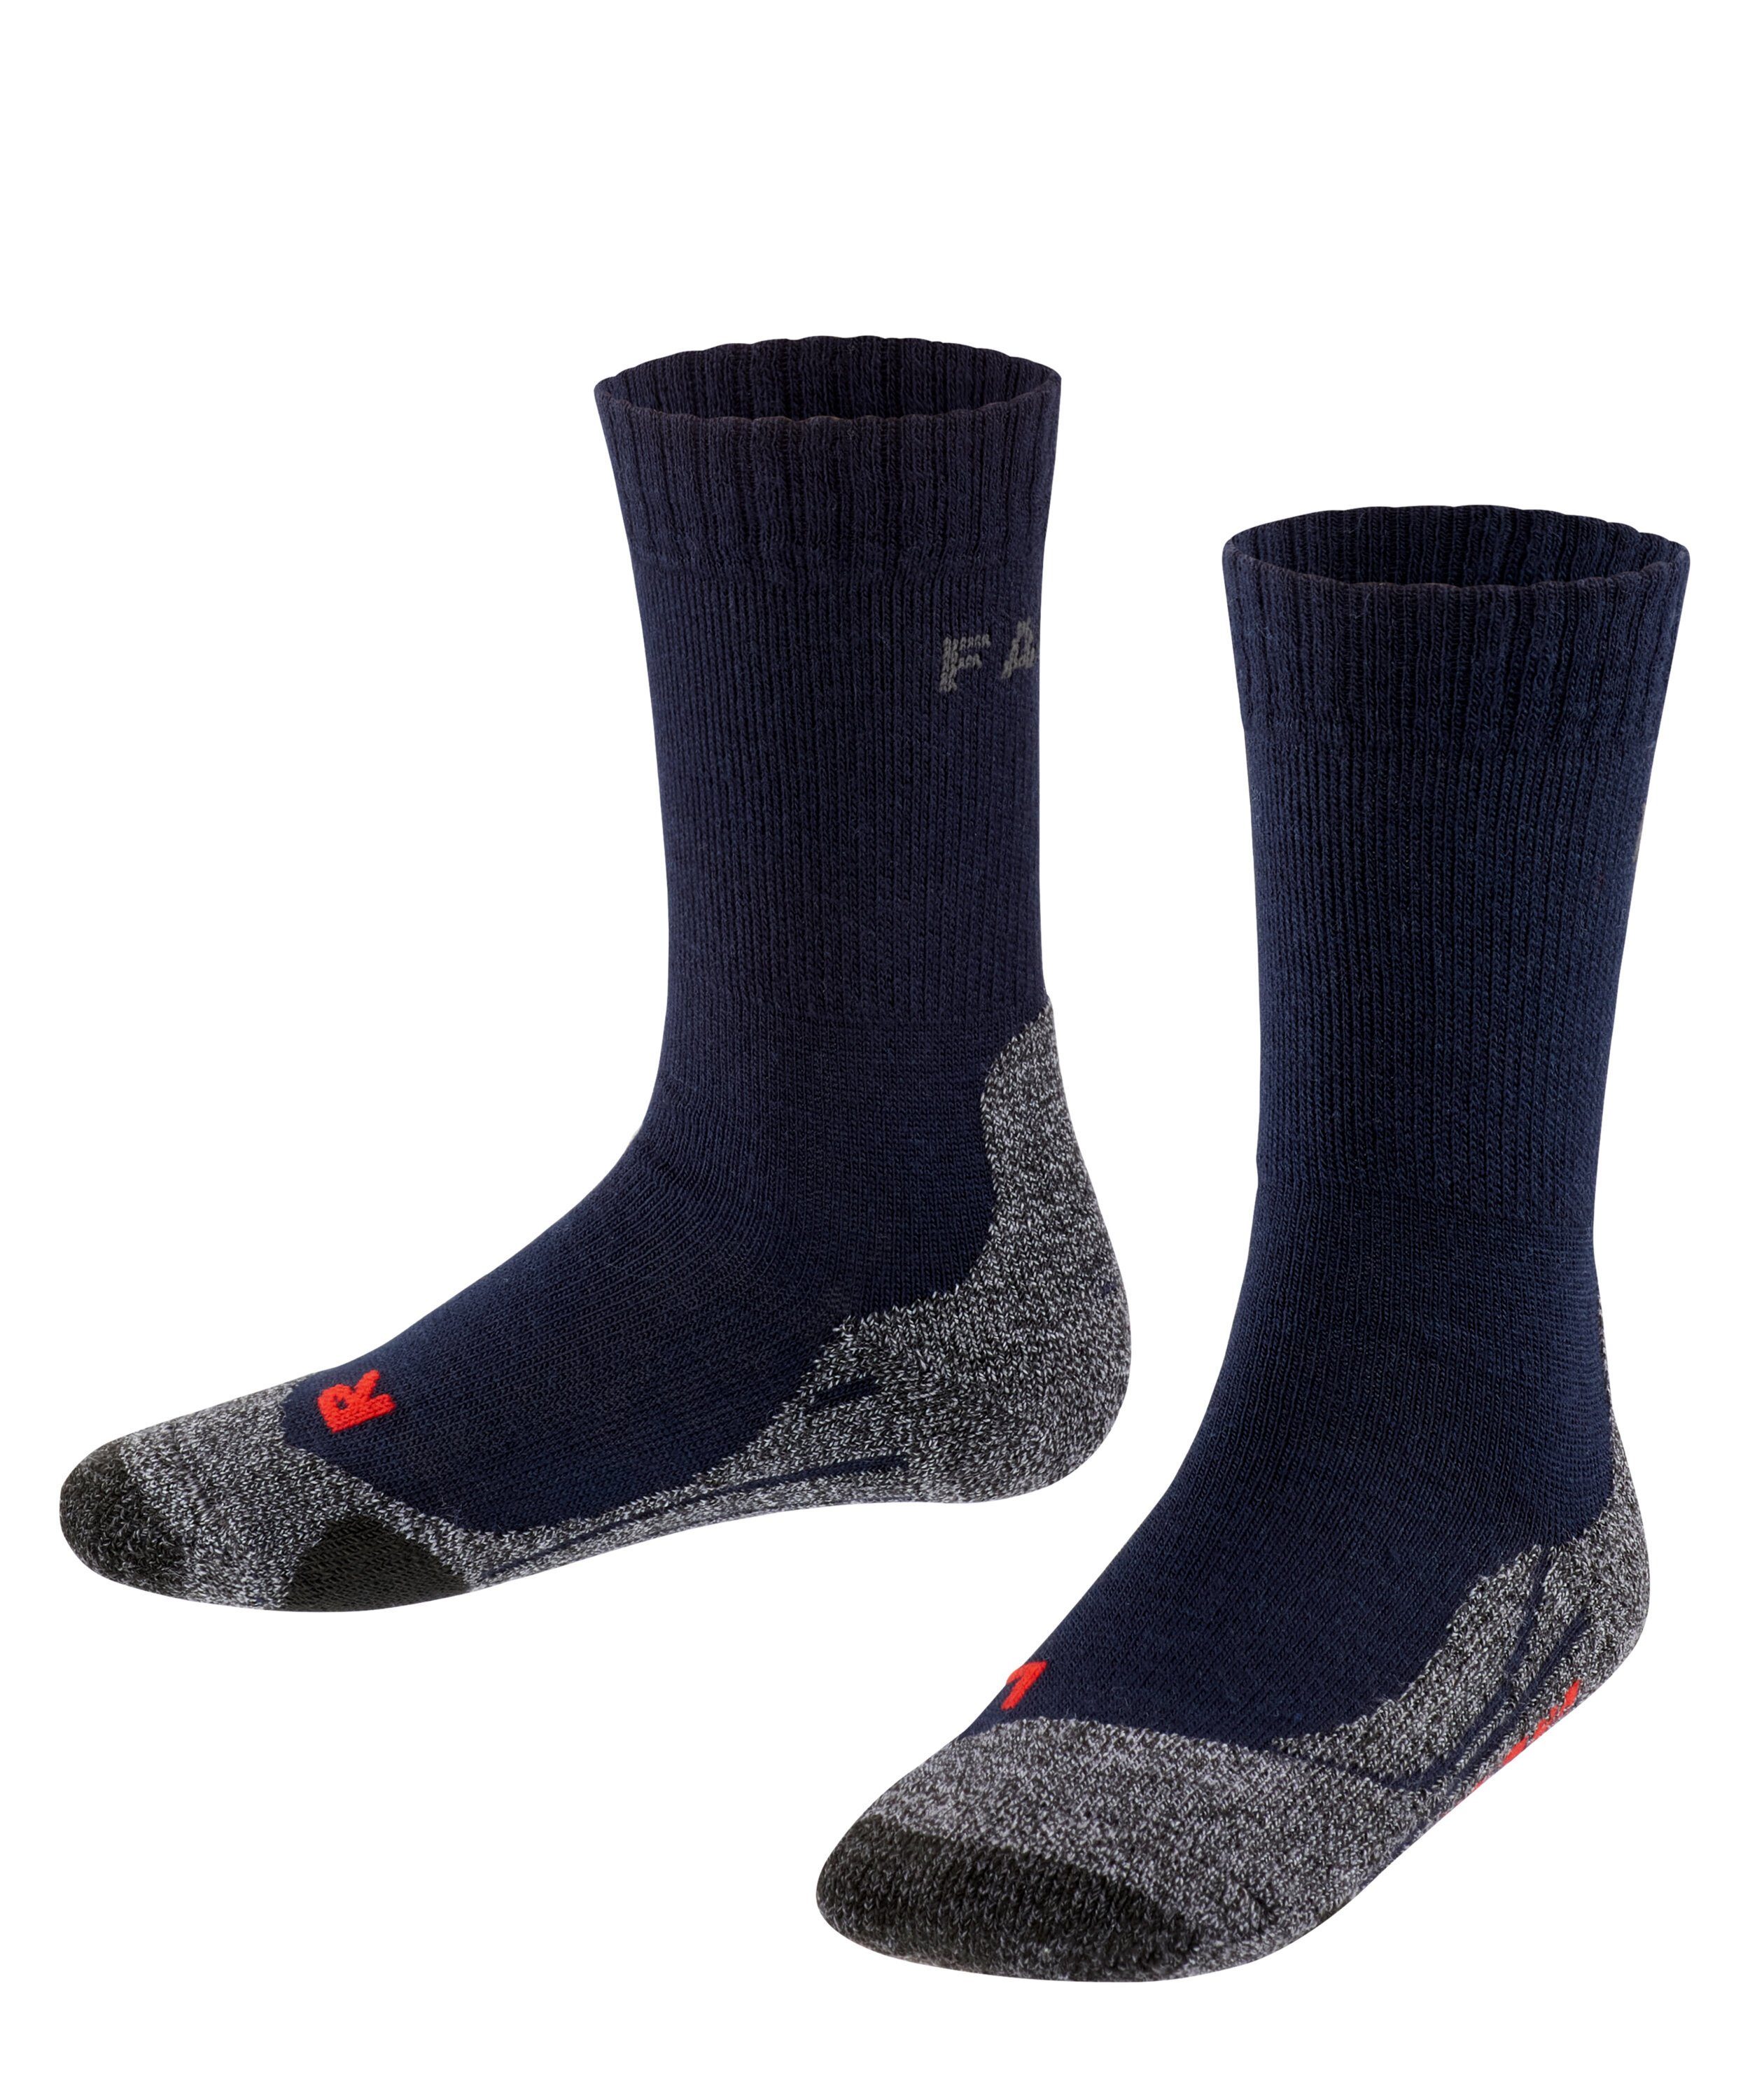 1 Paar FALKE Damen TK2 Trekking Socks Wandersocken Socken Strümpfe Farbwahl 